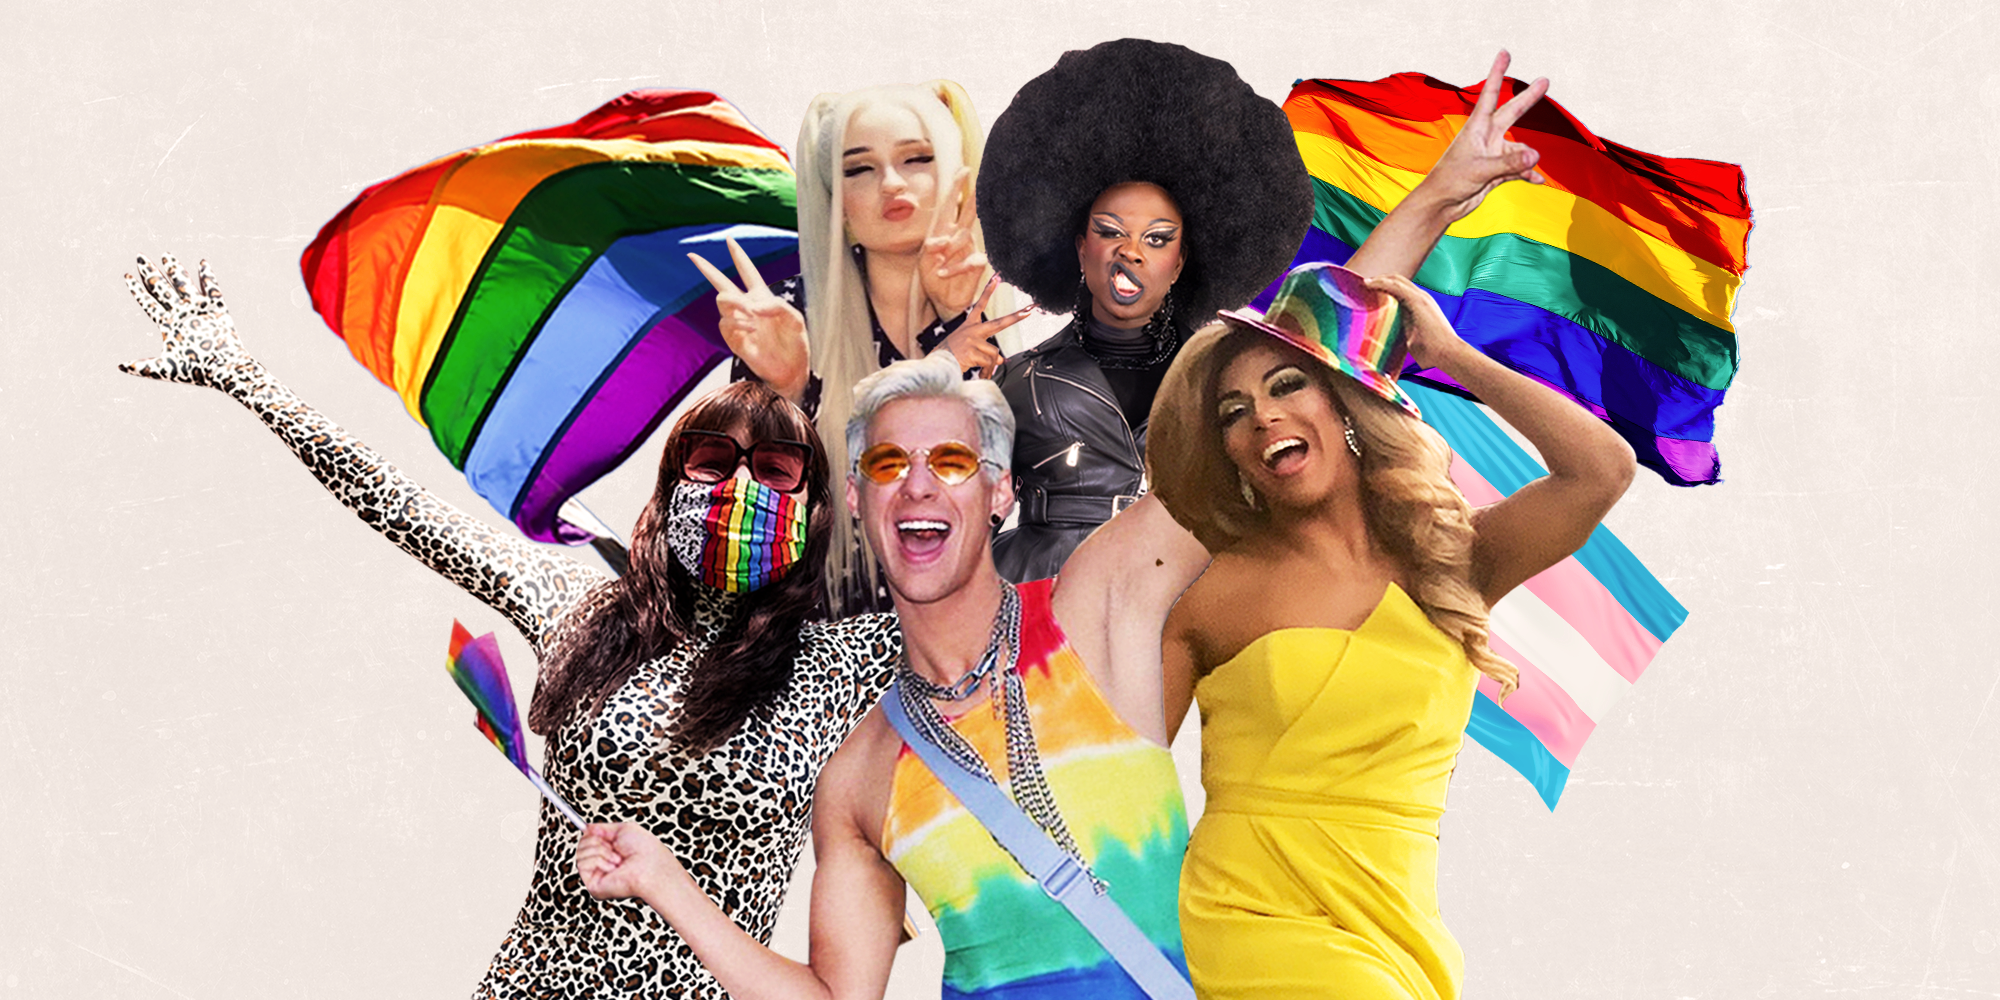 Introducing Gay Gay Lesbian Club, a pride-themed mod. Happy Pride